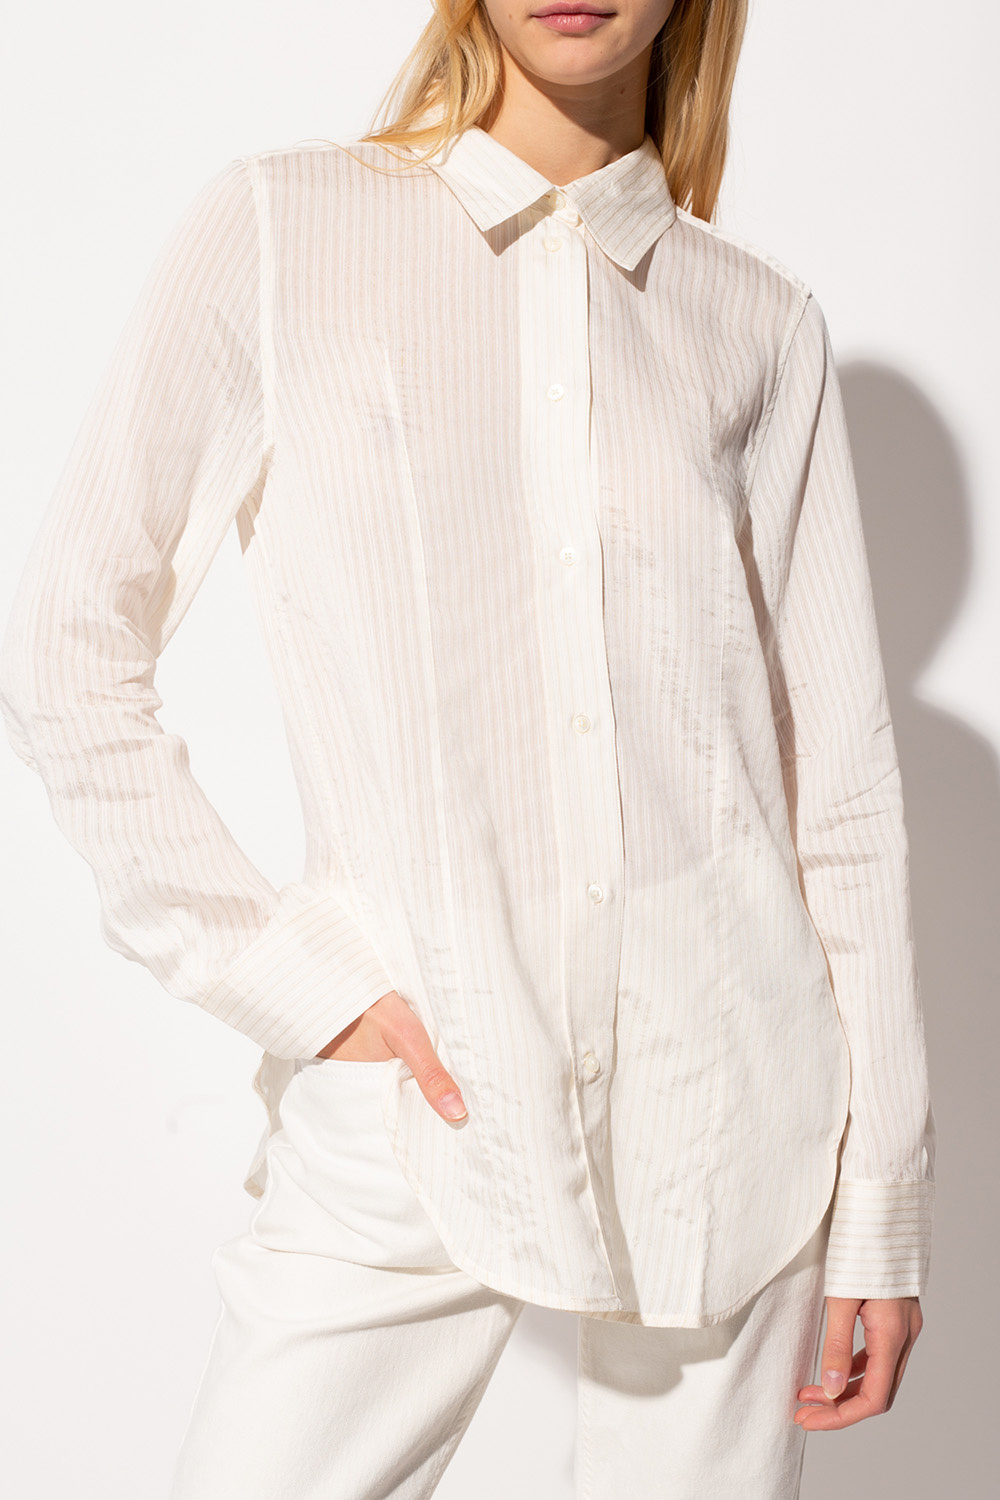 Toteme Striped shirt | Women's Clothing | IetpShops